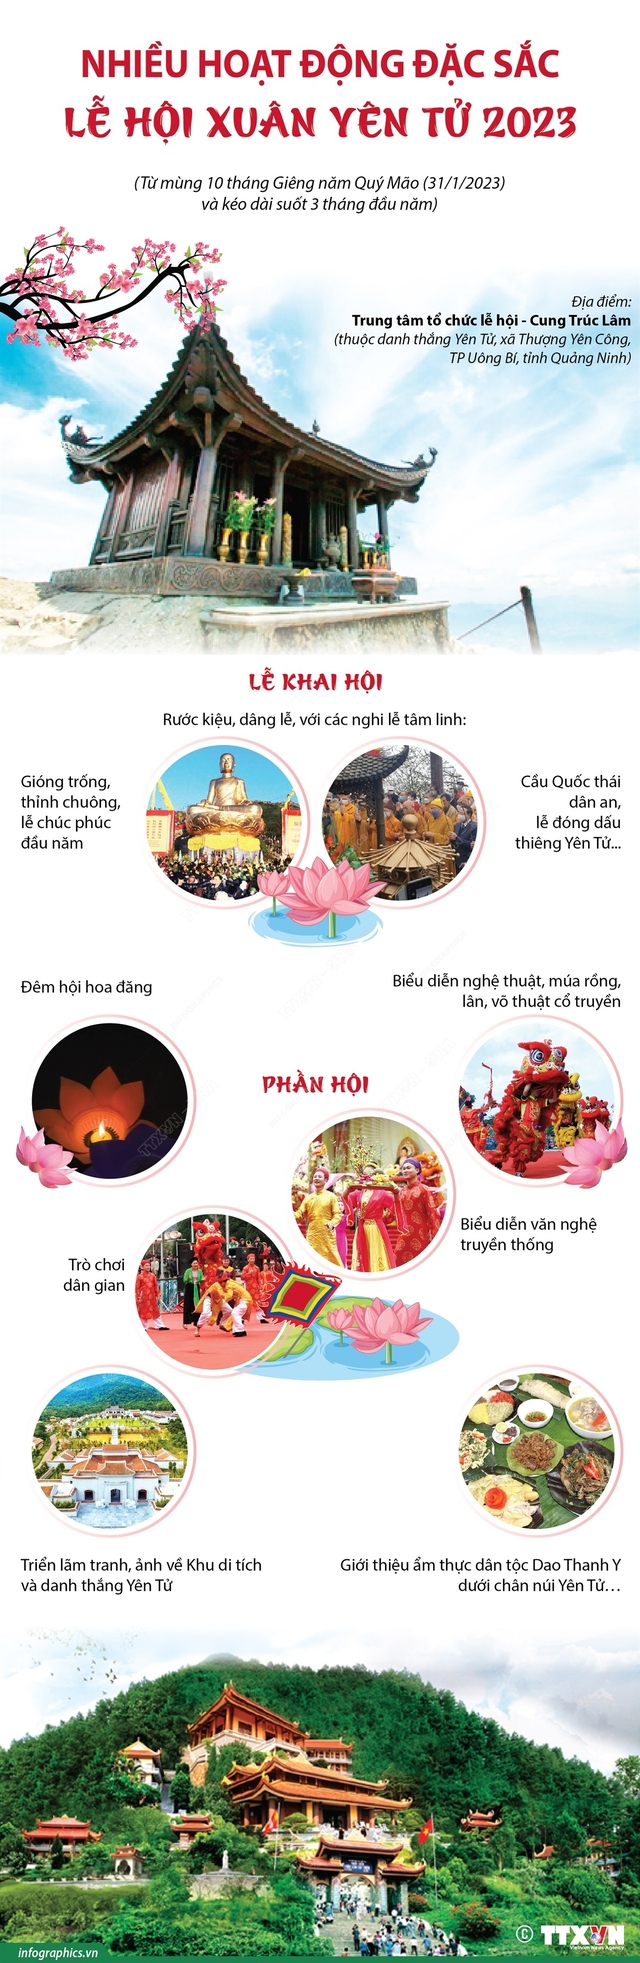 Nhiều hoạt động đặc sắc trong Lễ hội Xuân Yên Tử 2023 - Ảnh 1.